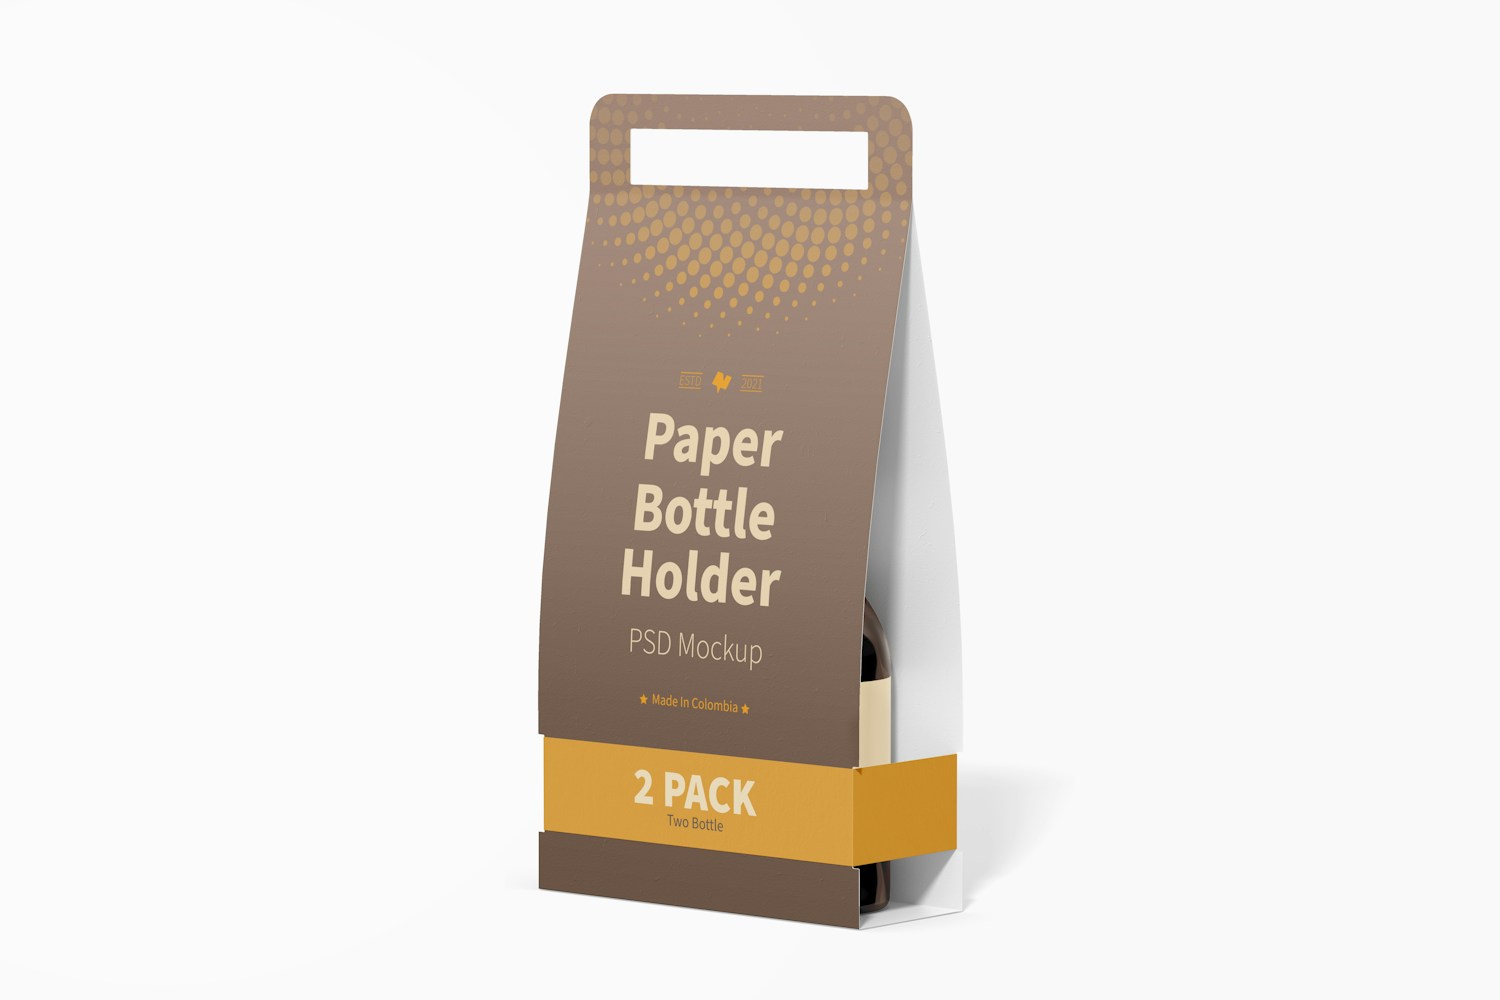 2 Pack Paper Bottle Holder Mockup